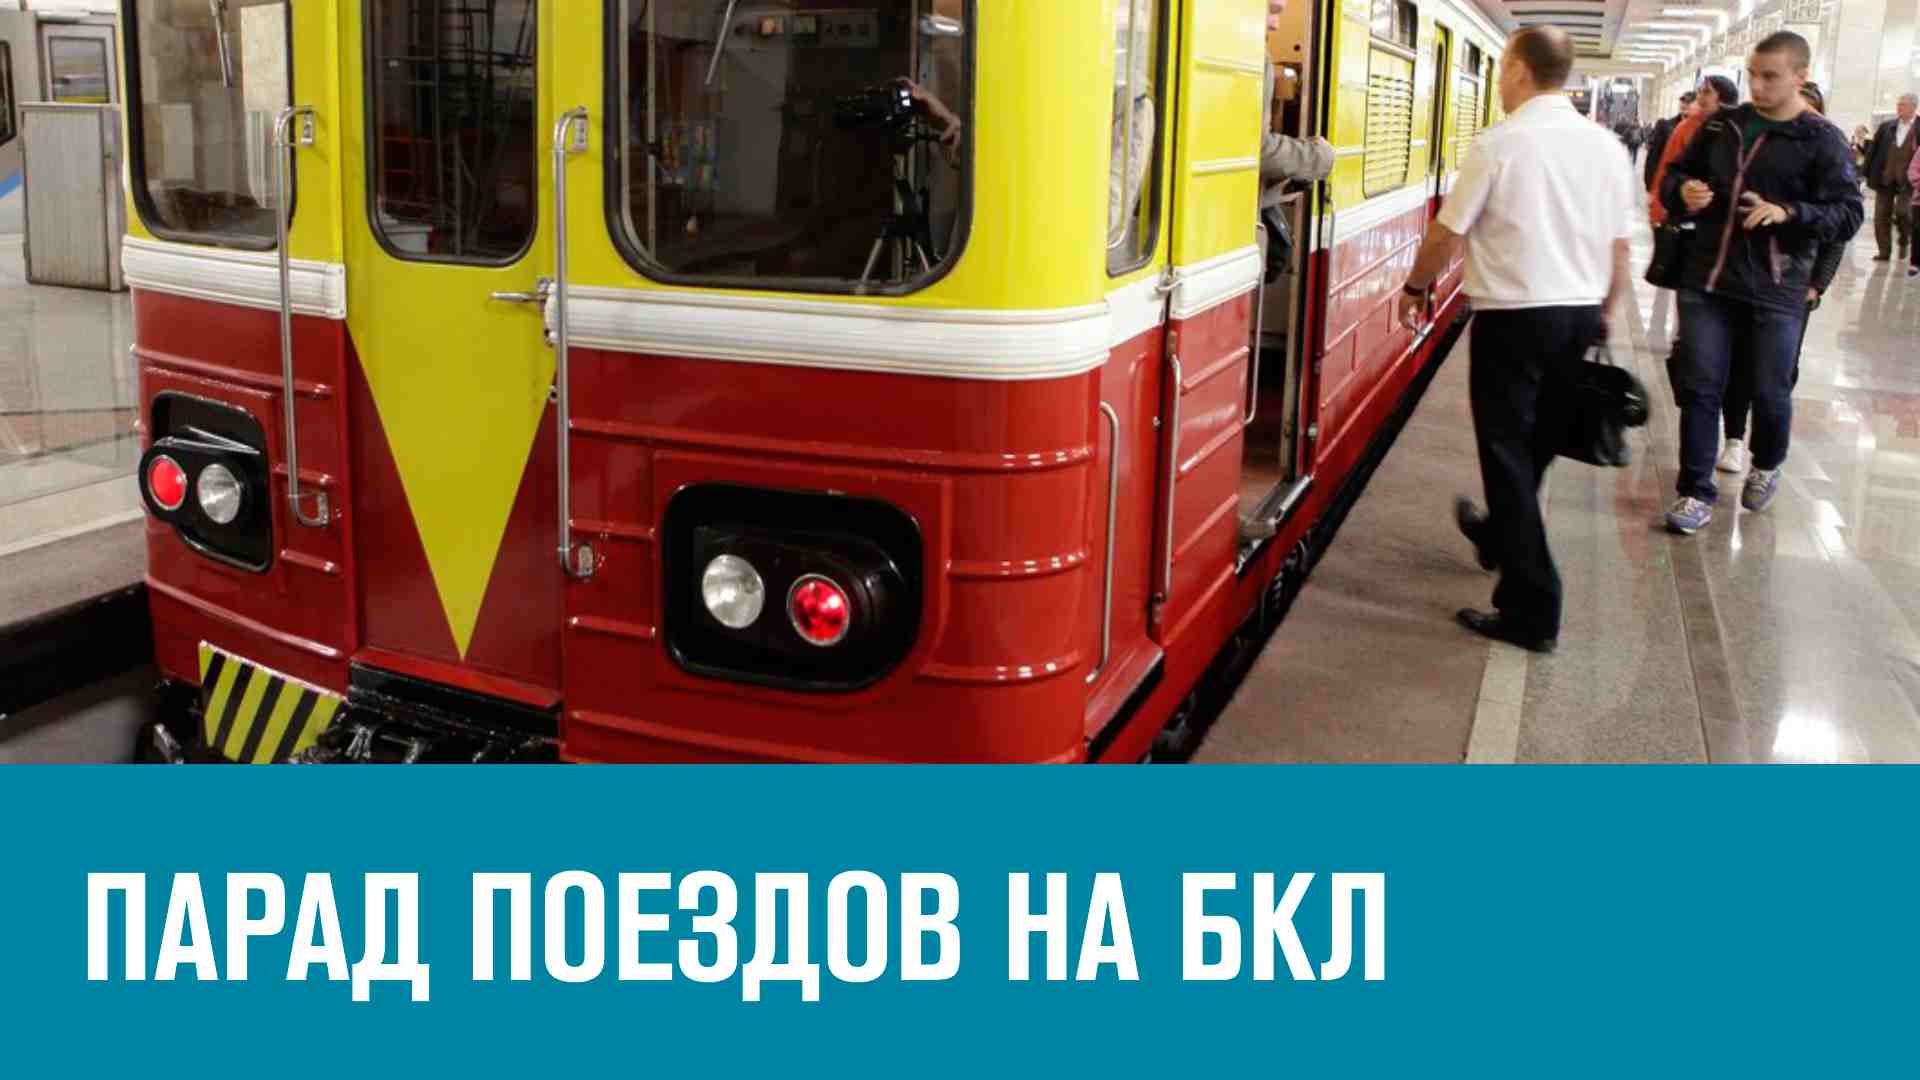 18-19 мая по БКЛ будут ходить поезда всех поколений - Москва FM